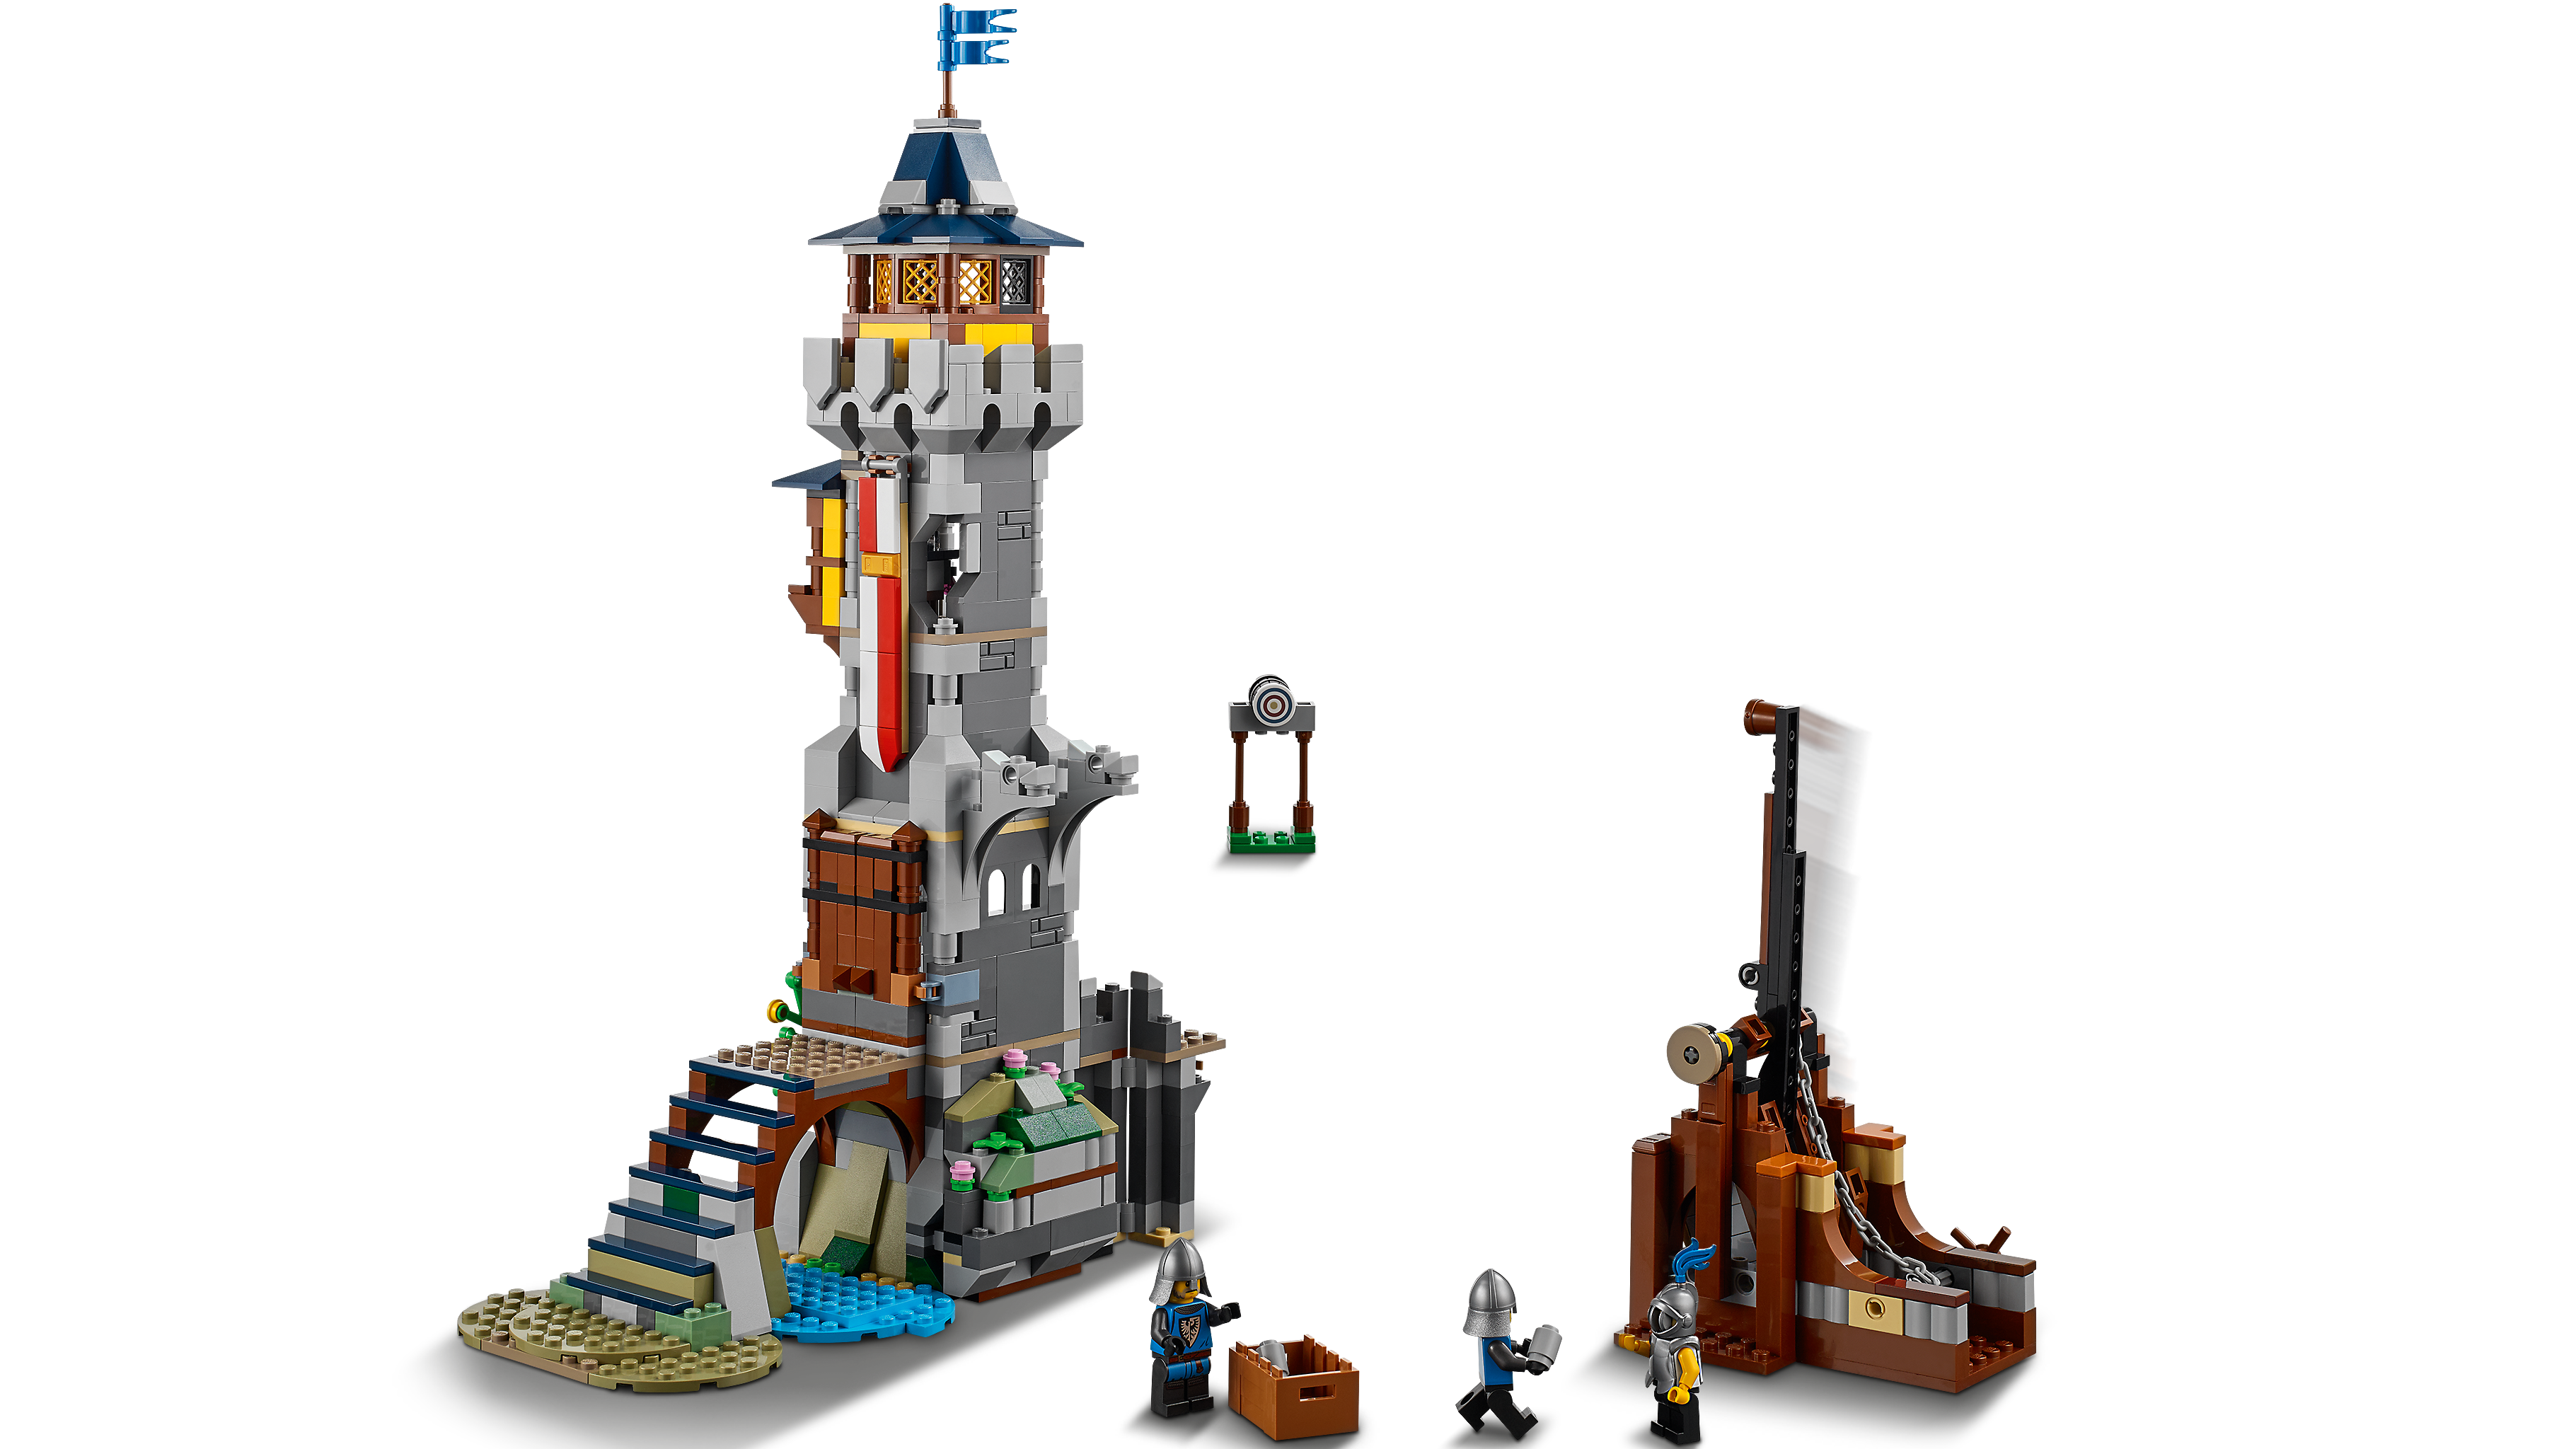 中世のお城 31120 - レゴ®クリエイターセット - LEGO.comキッズ